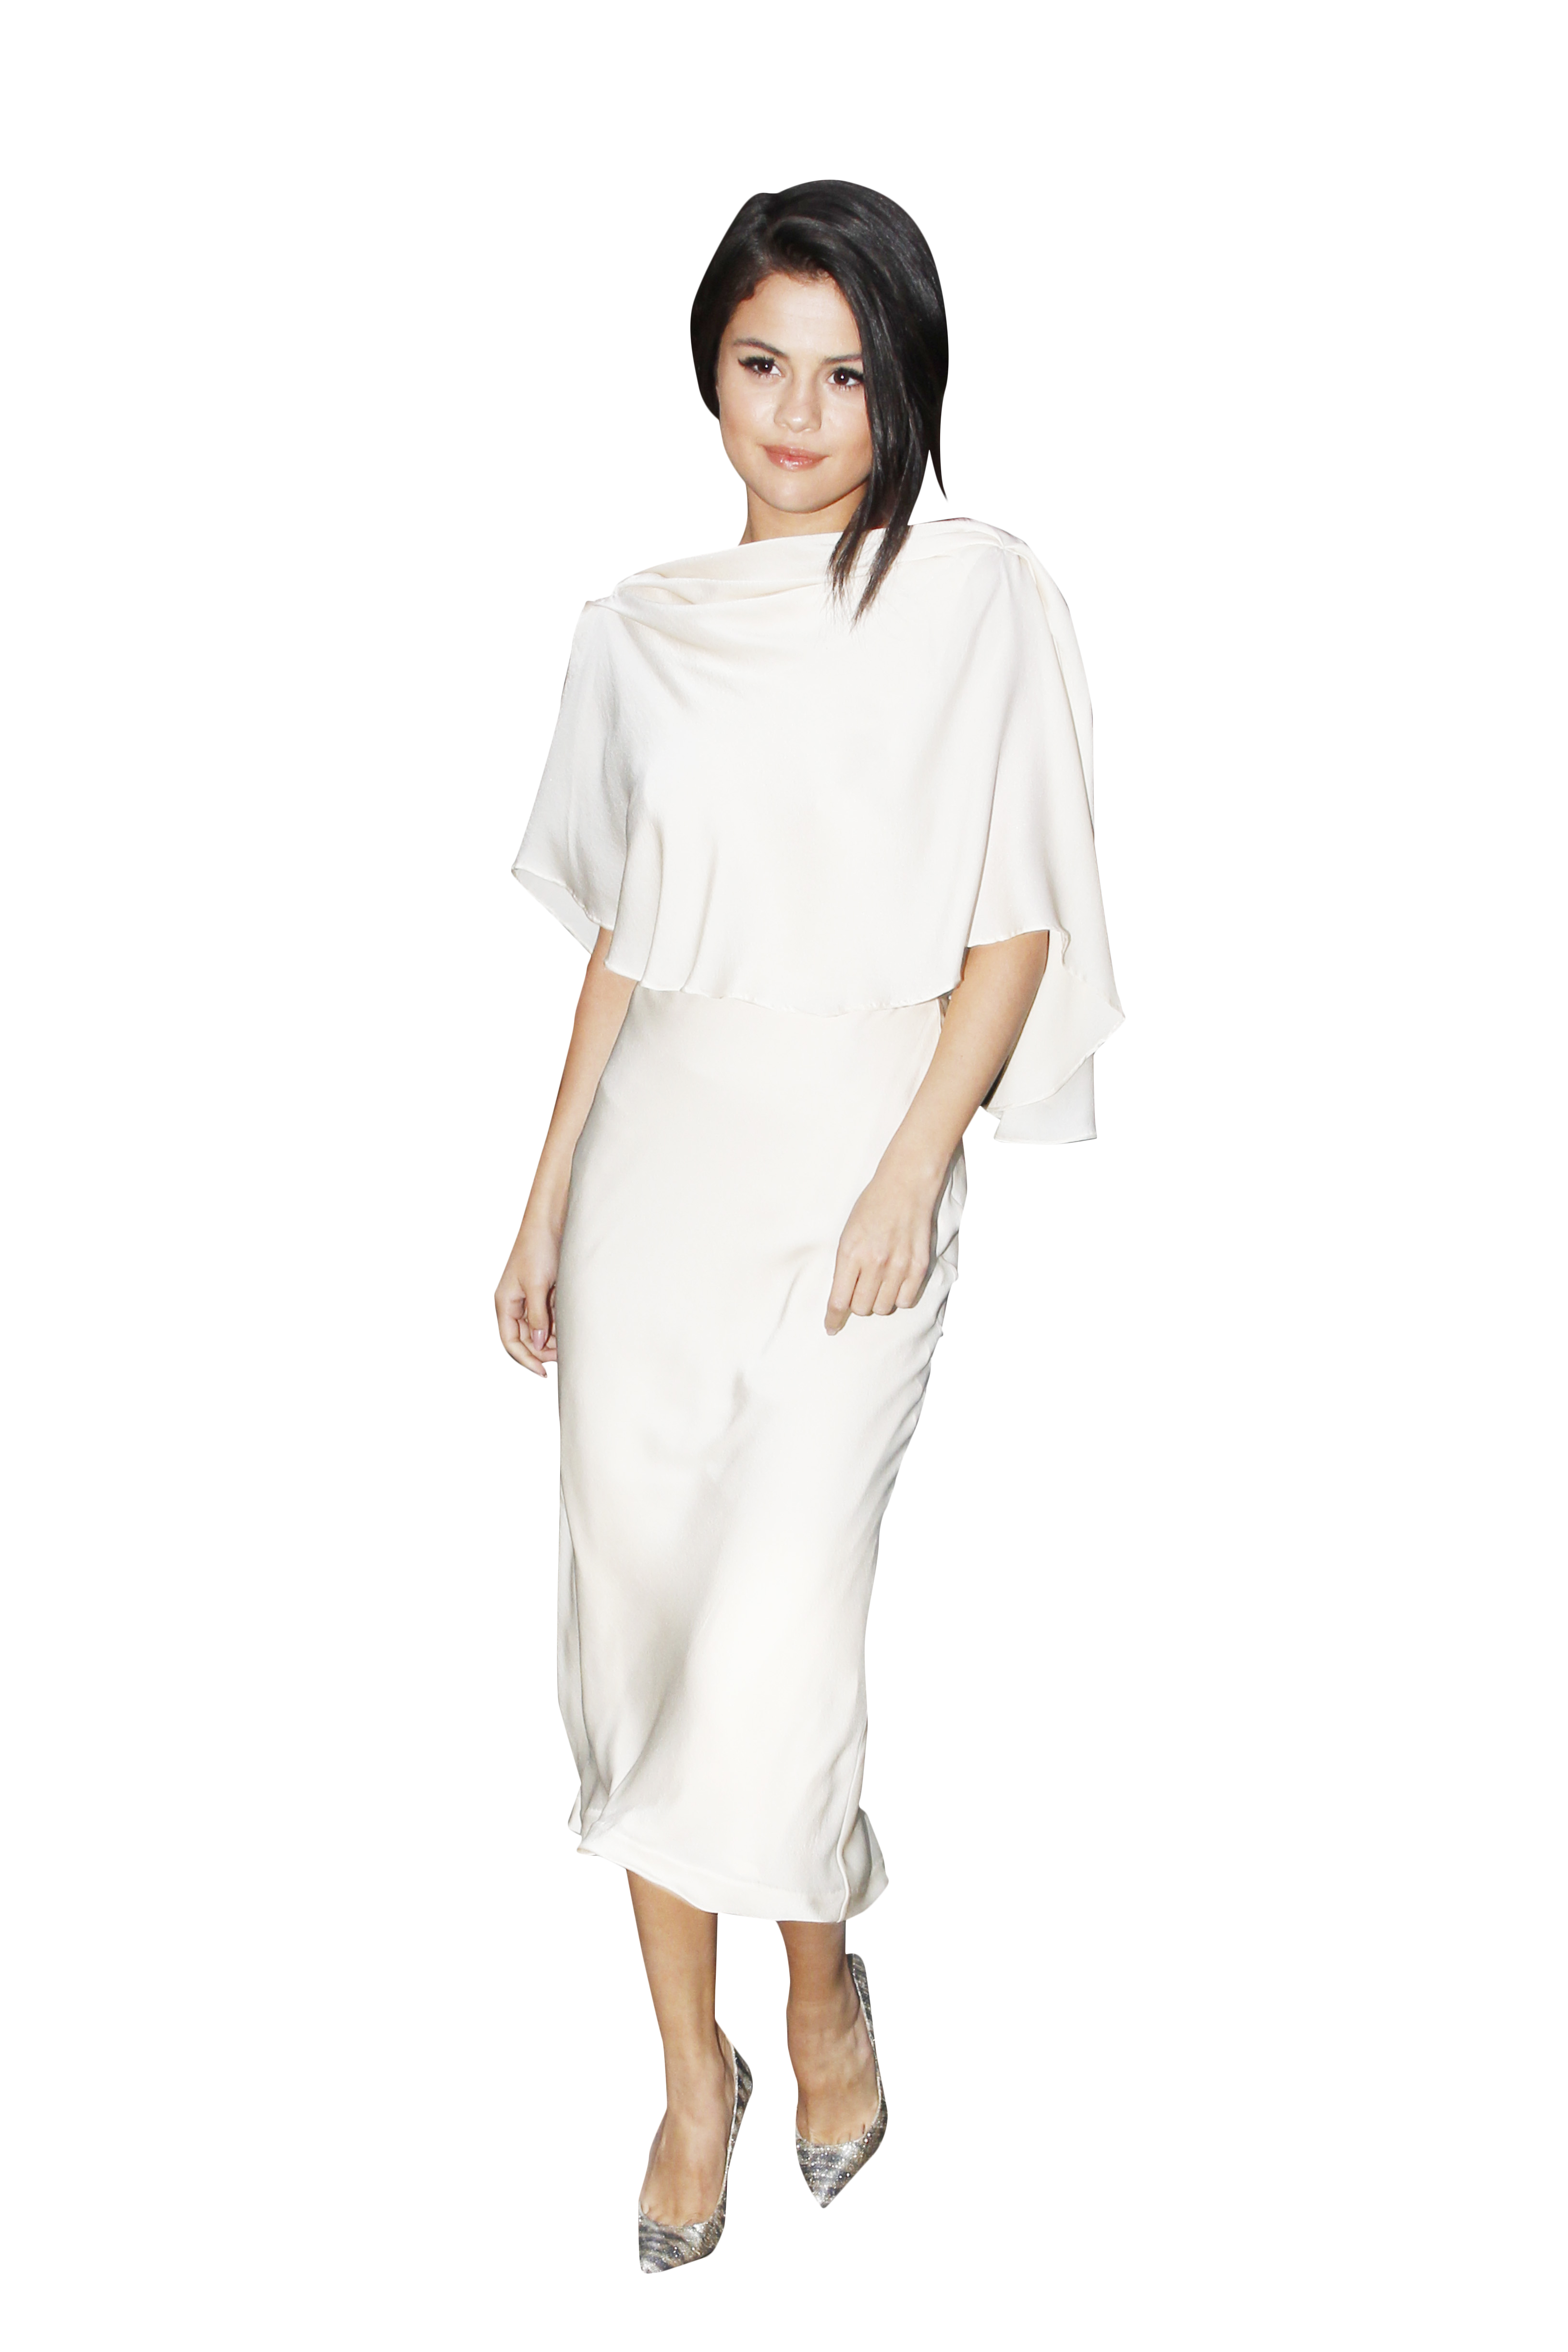 Selena Gomez White Dress